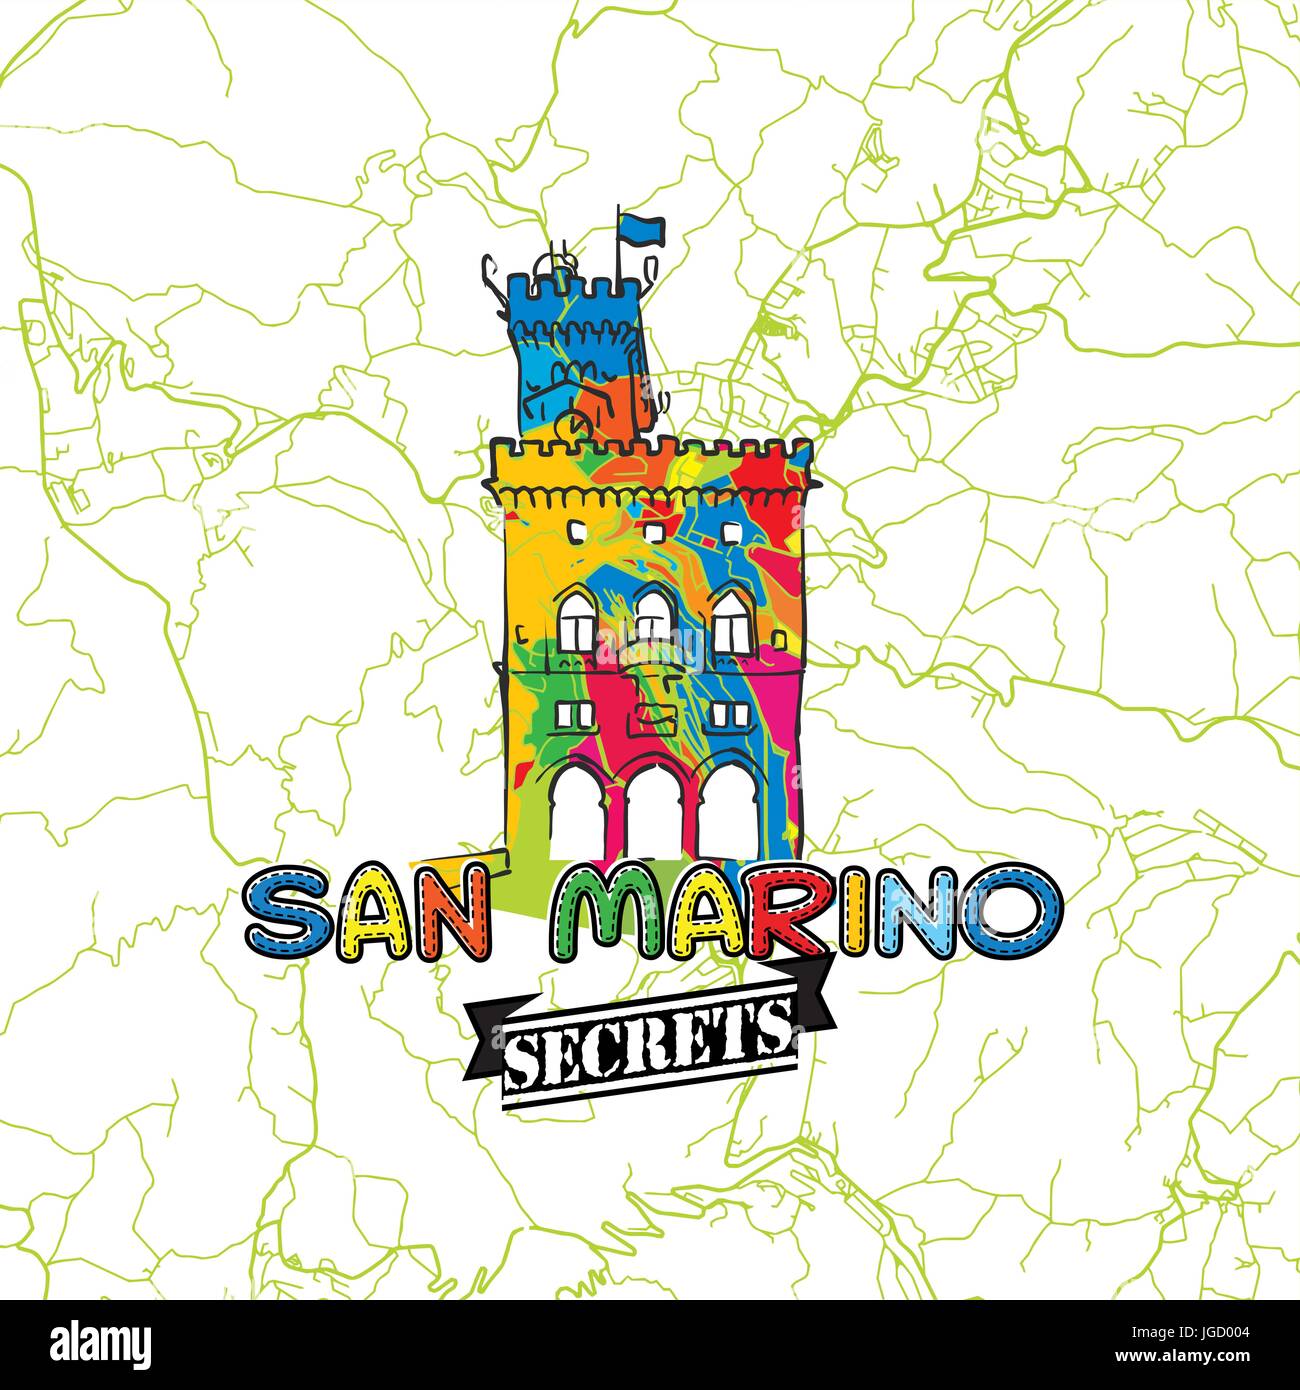 San Marino Reisen Geheimnisse Art Map für die Zuordnung von Experten und Reiseführer. Handgemachte Stadt Logo, Typo-Abzeichen und Hand gezeichnete Vektorbild auf Top sind gruppiert Stock Vektor